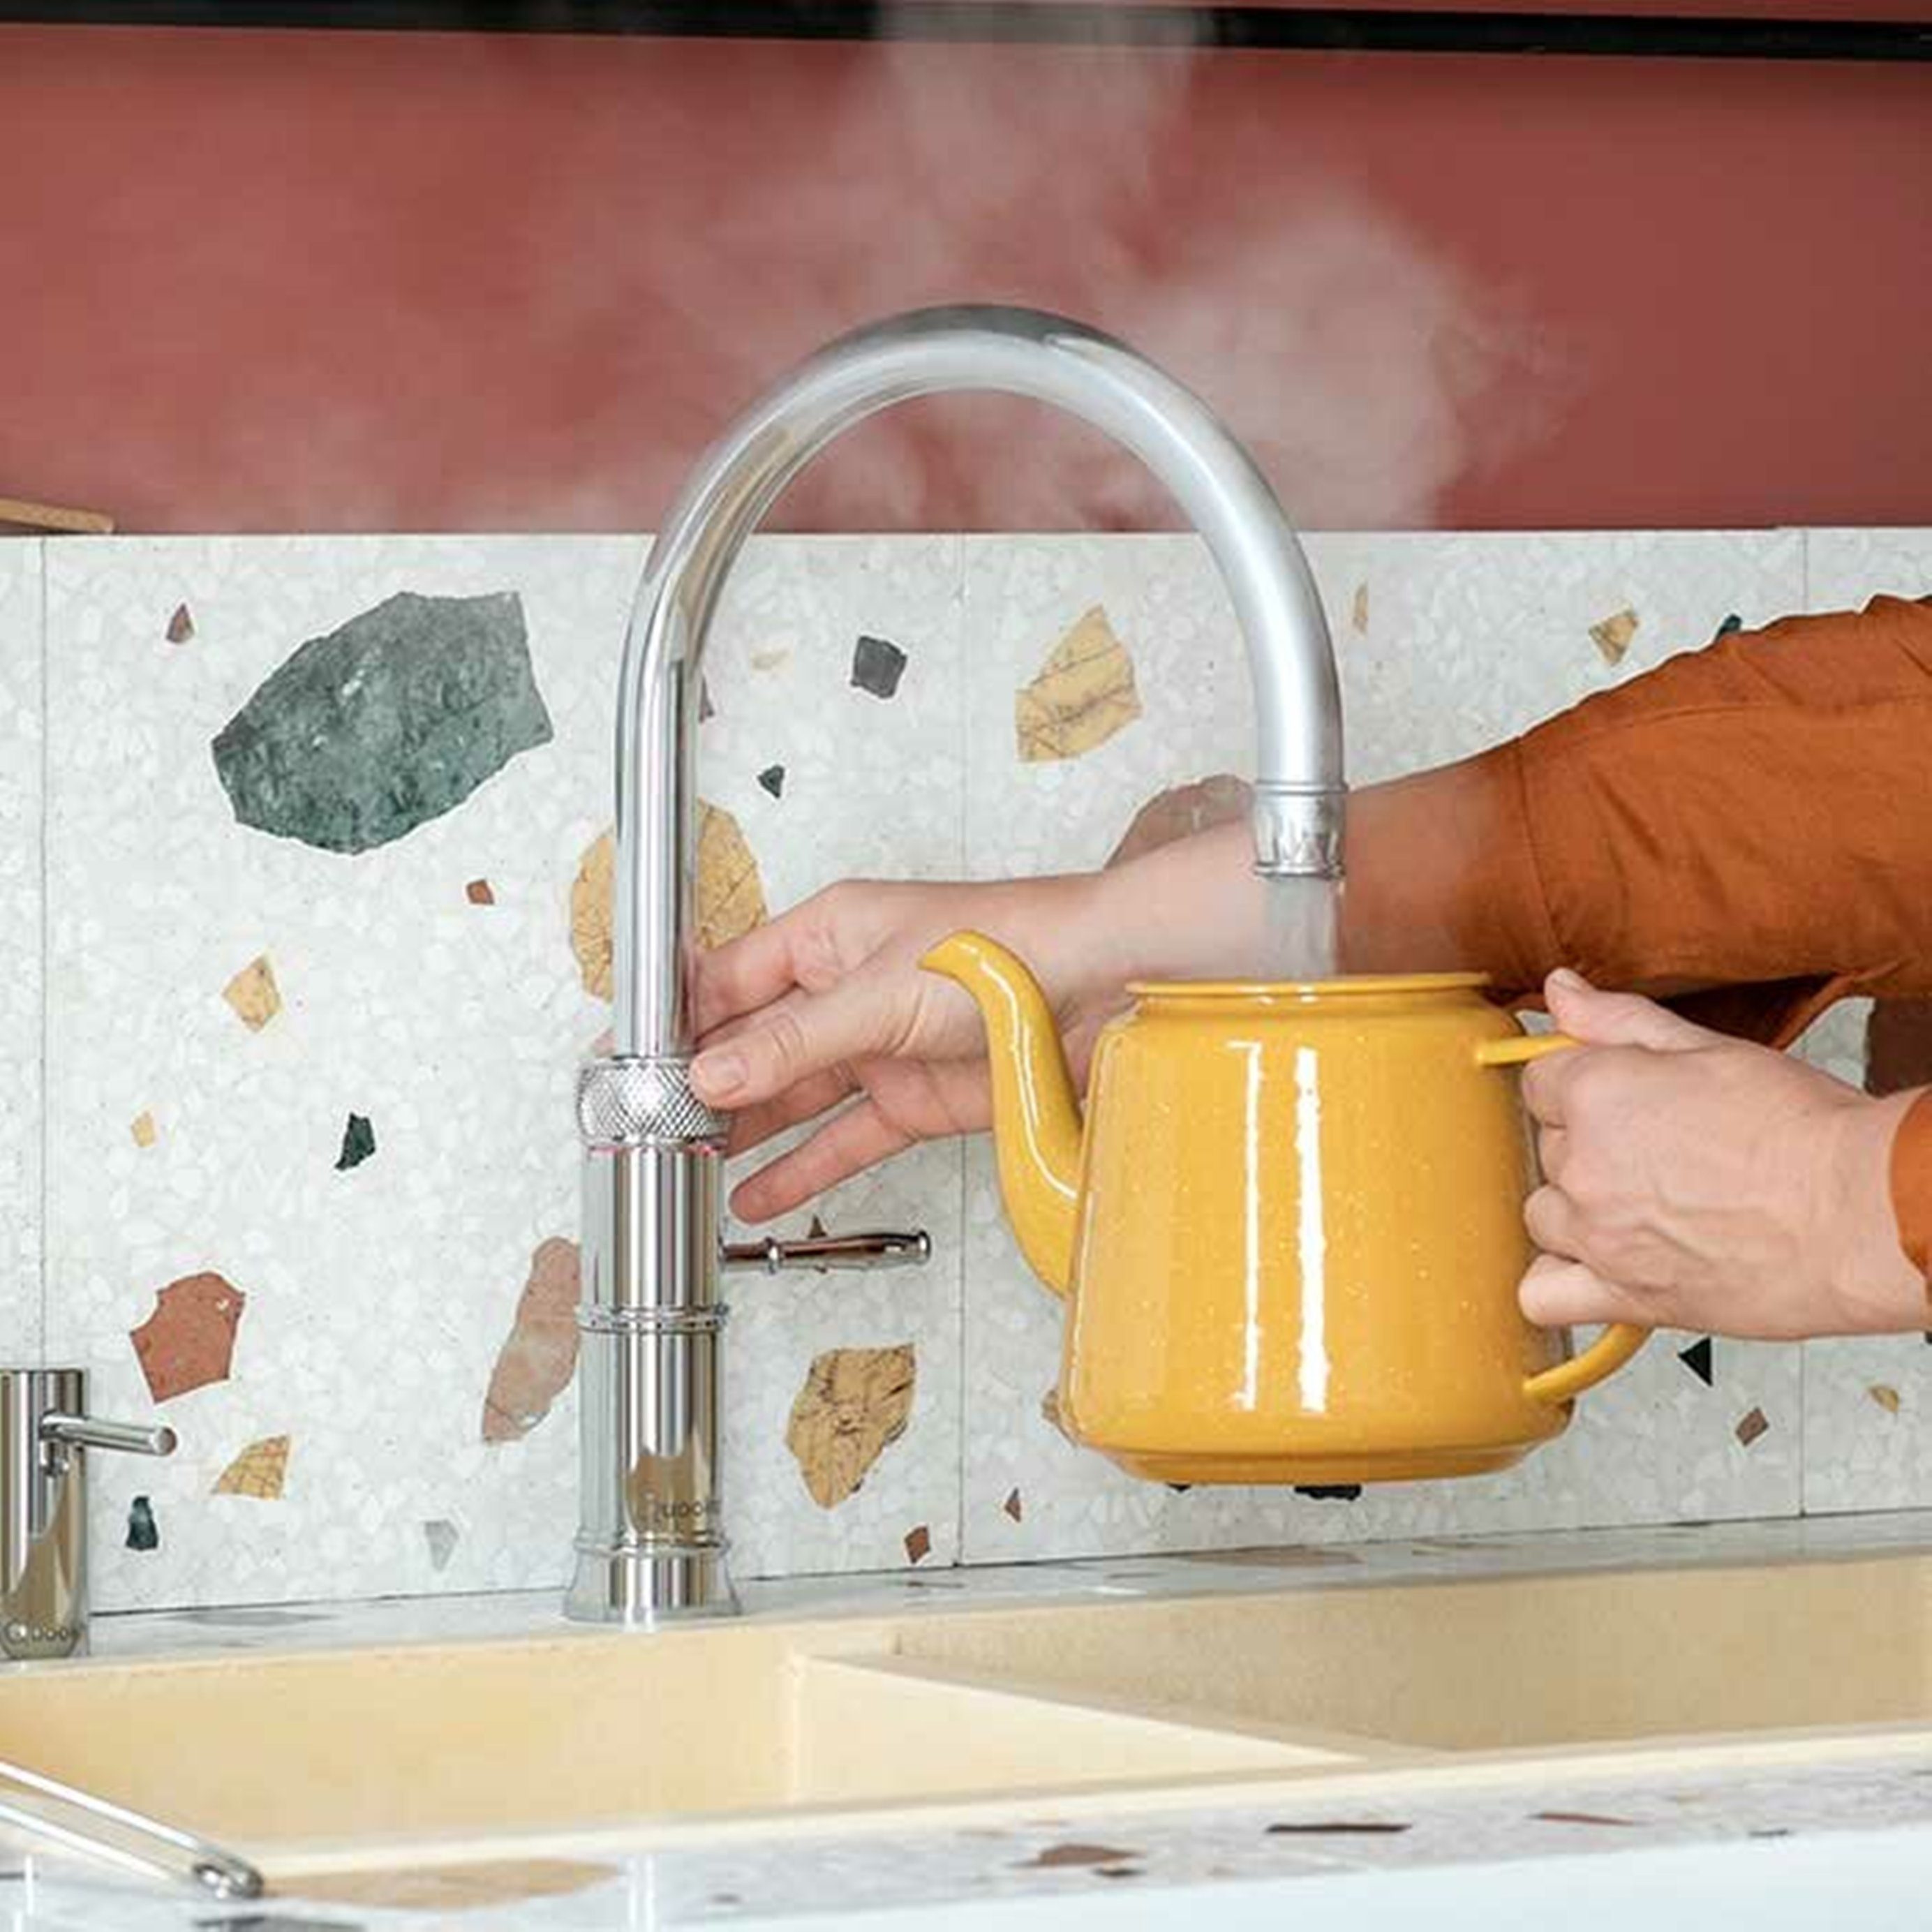 QUOOKER 2 ROUND CUBE COMBI+ QUOOKER CLASSIC Trinkwassersystem (2-St) Küchenarmatur FUSION Kochendwasserhahn B (22+CFRRVSCUBE) Edelstahl mit mit 100°C